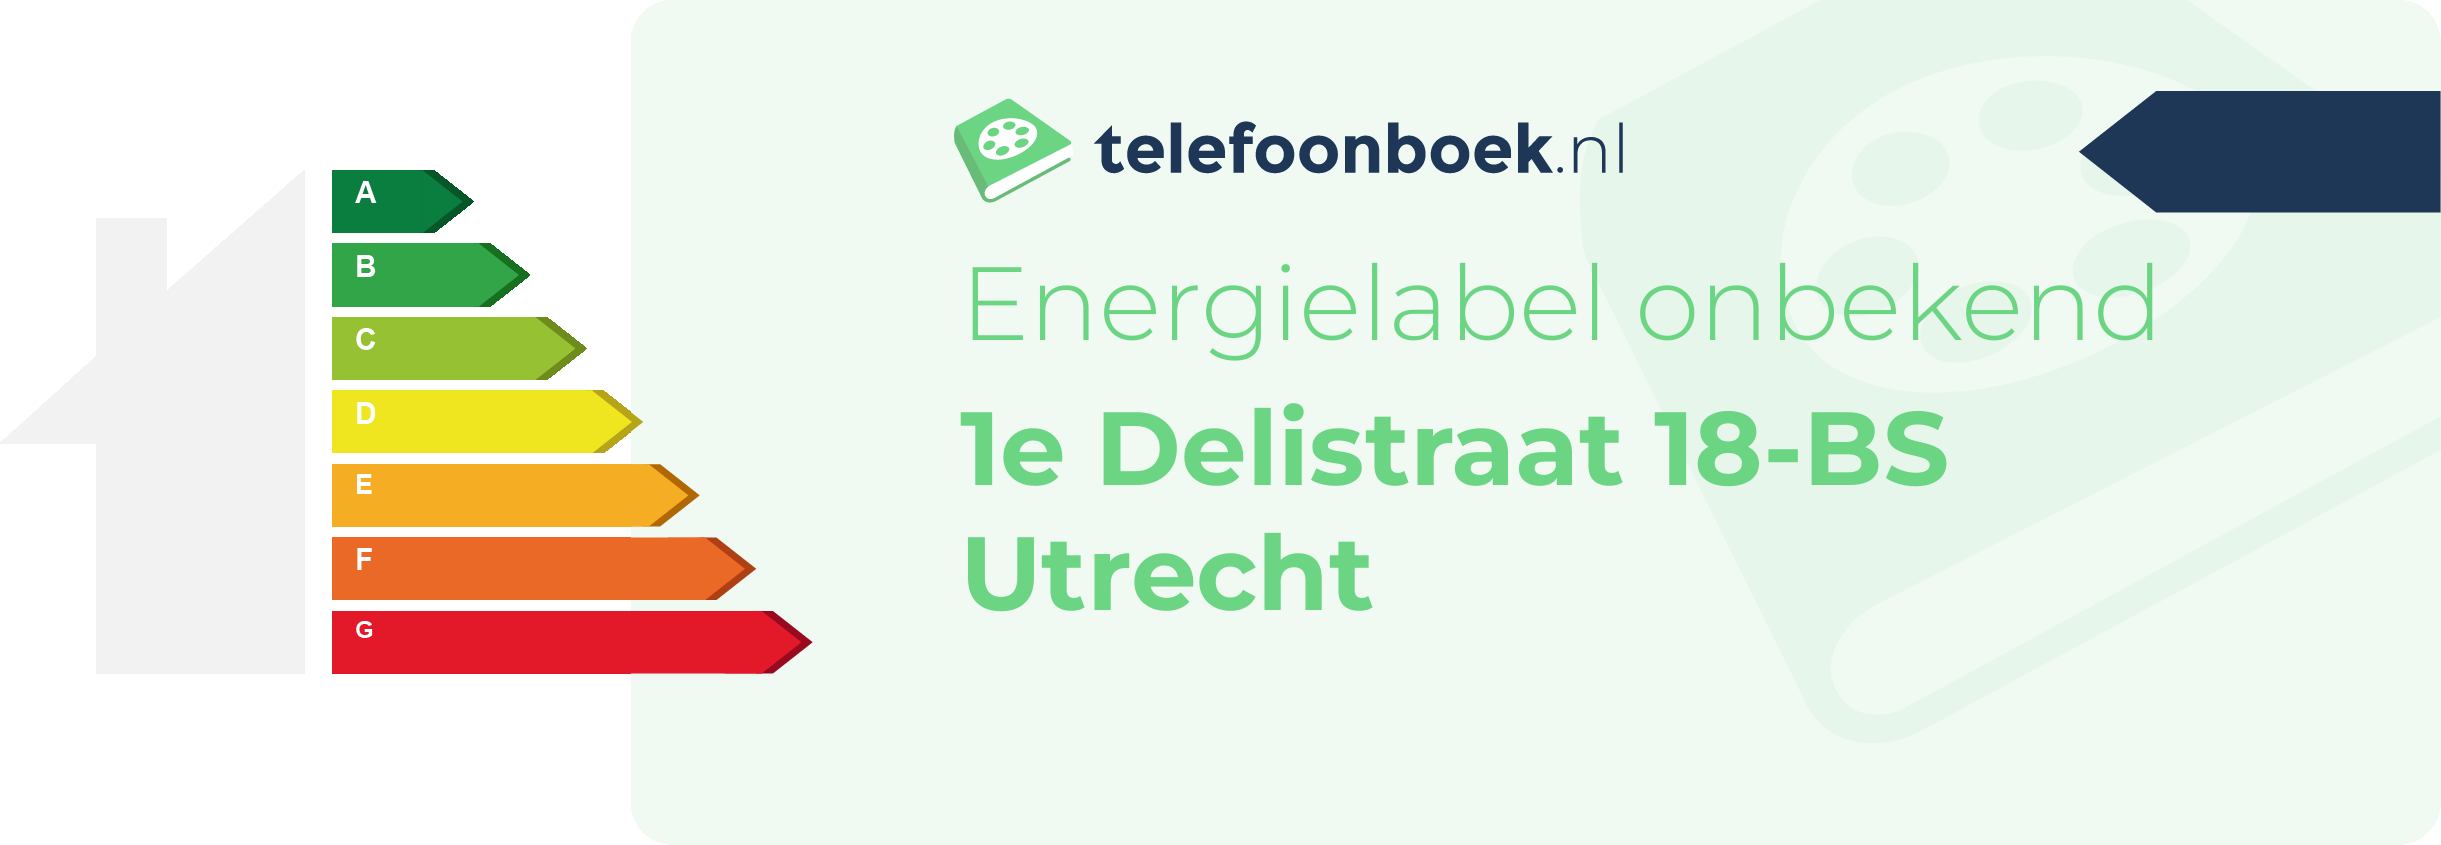 Energielabel 1e Delistraat 18-BS Utrecht